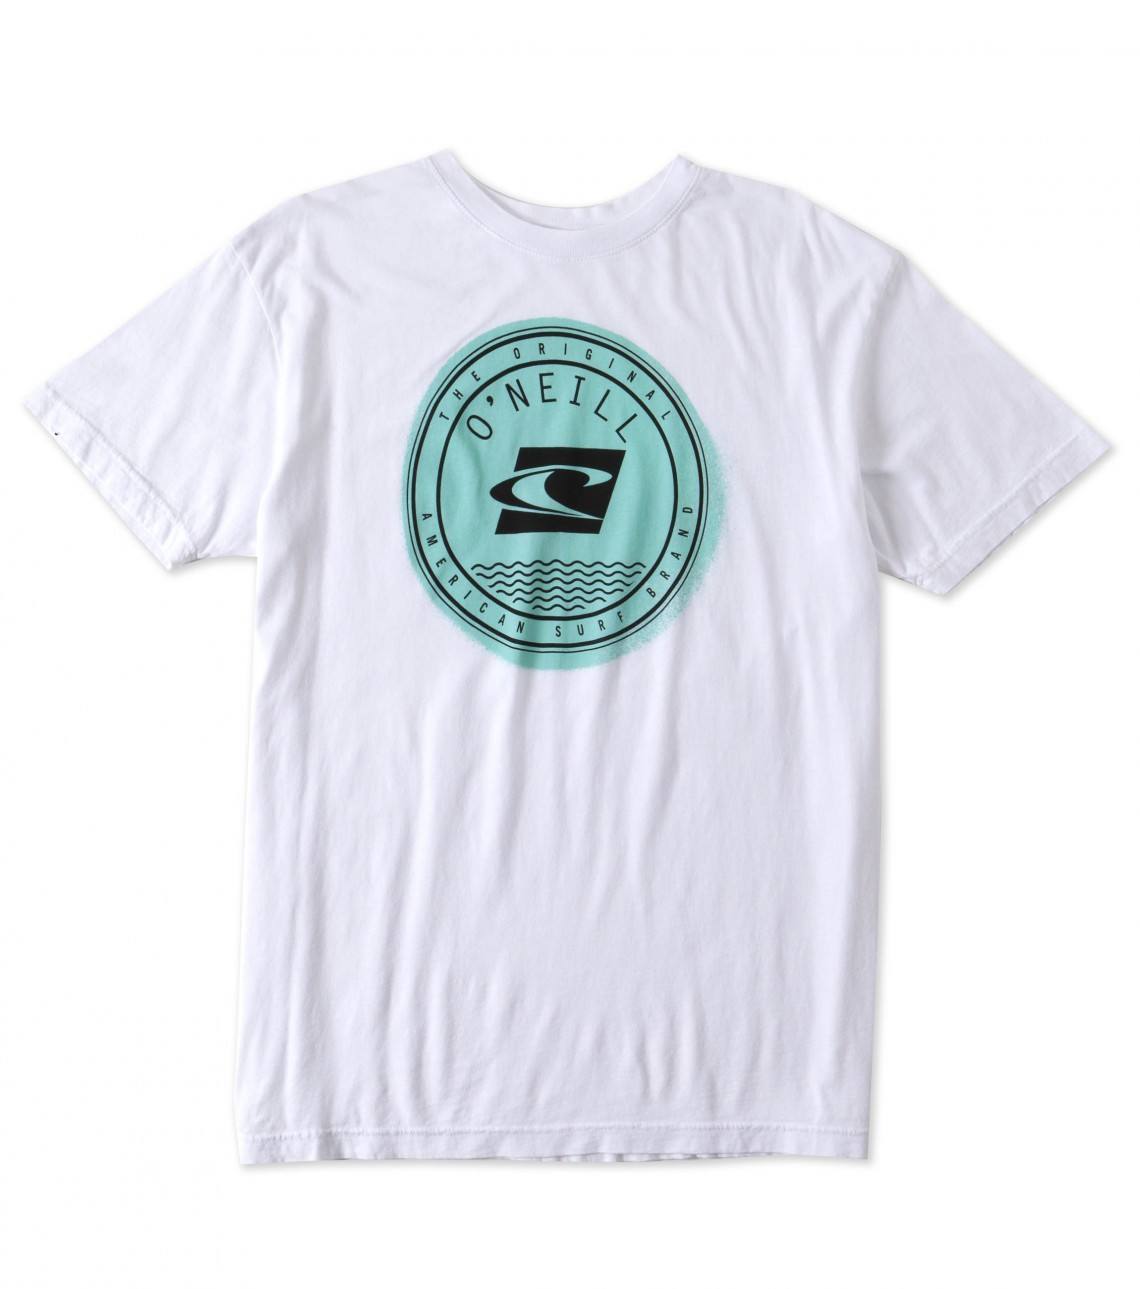 O'Neill Emblem White T-shirt